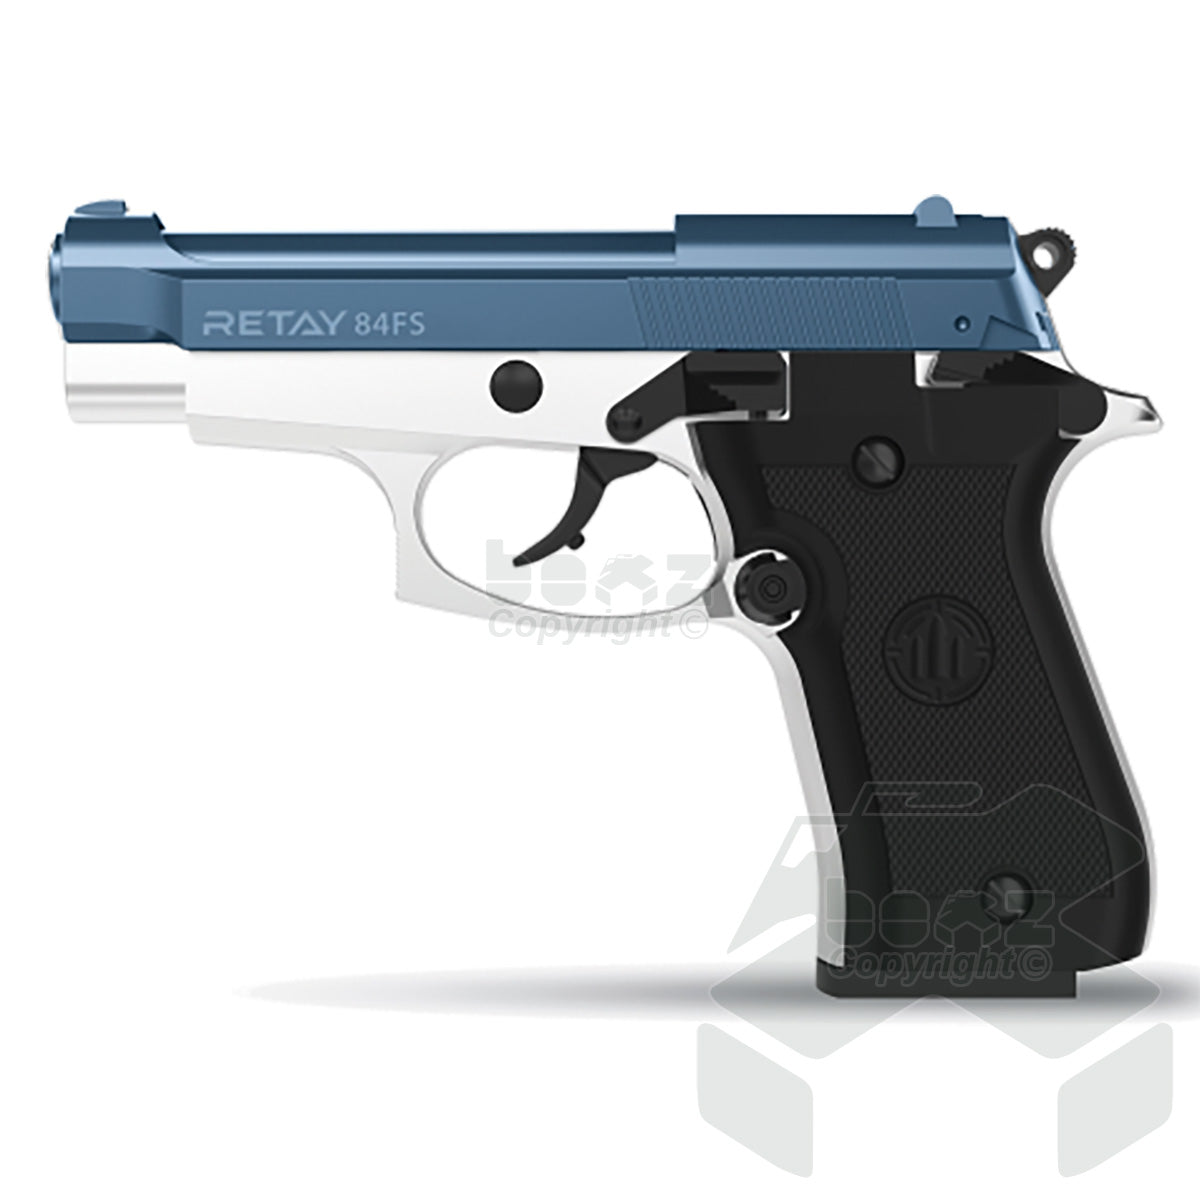 Retay 84 FS Blank Firing Pistol - 9mm - Nickel